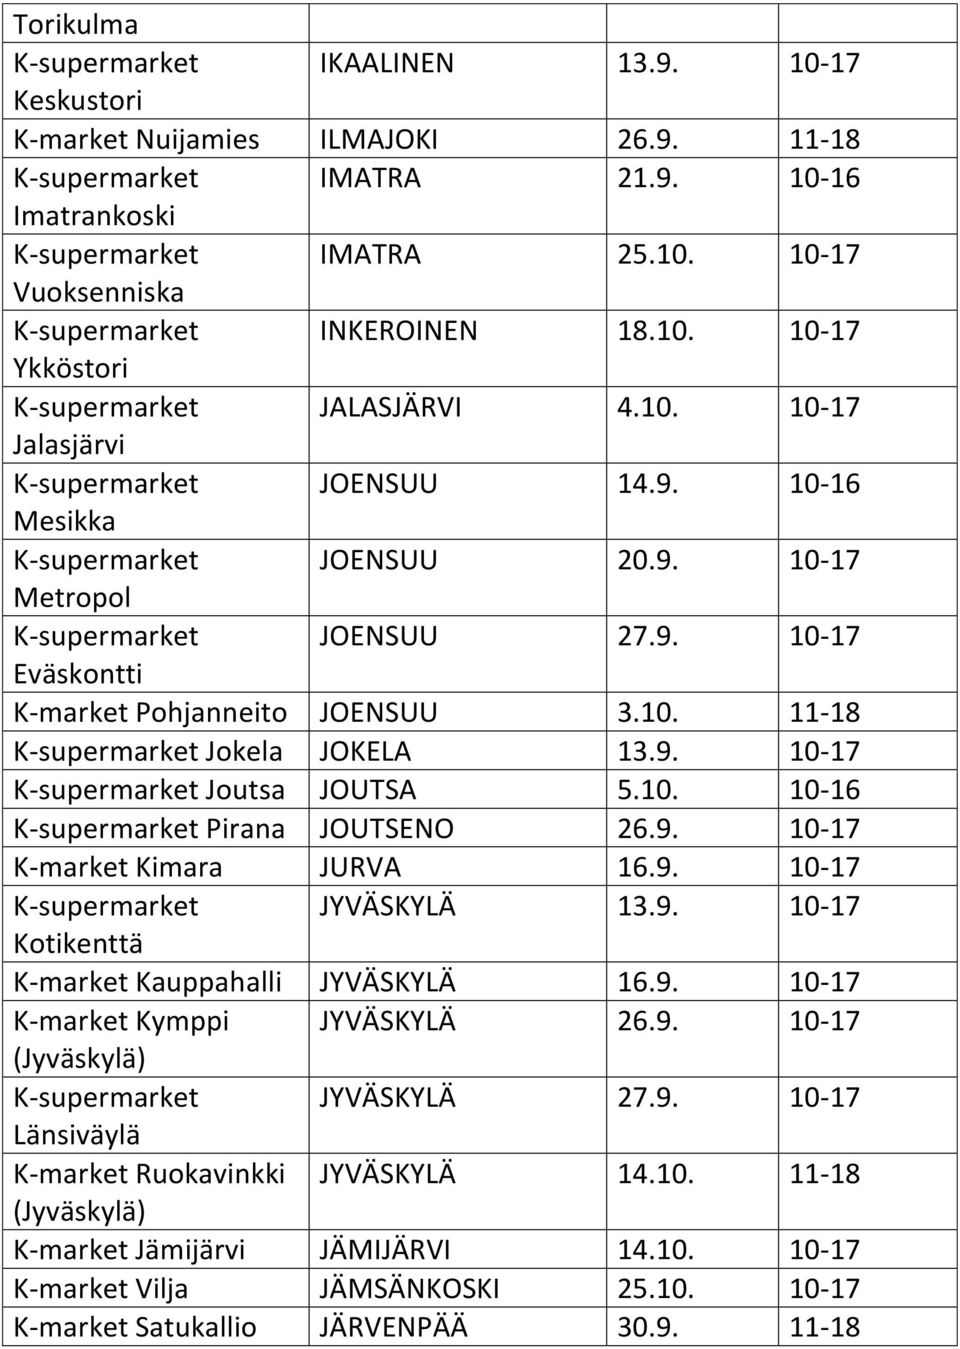 10. 11-18 K-supermarket Jokela JOKELA 13.9. 10-17 K-supermarket Joutsa JOUTSA 5.10. 10-16 K-supermarket Pirana JOUTSENO 26.9. 10-17 K-market Kimara JURVA 16.9. 10-17 K-supermarket JYVÄSKYLÄ 13.9. 10-17 Kotikenttä K-market Kauppahalli JYVÄSKYLÄ 16.